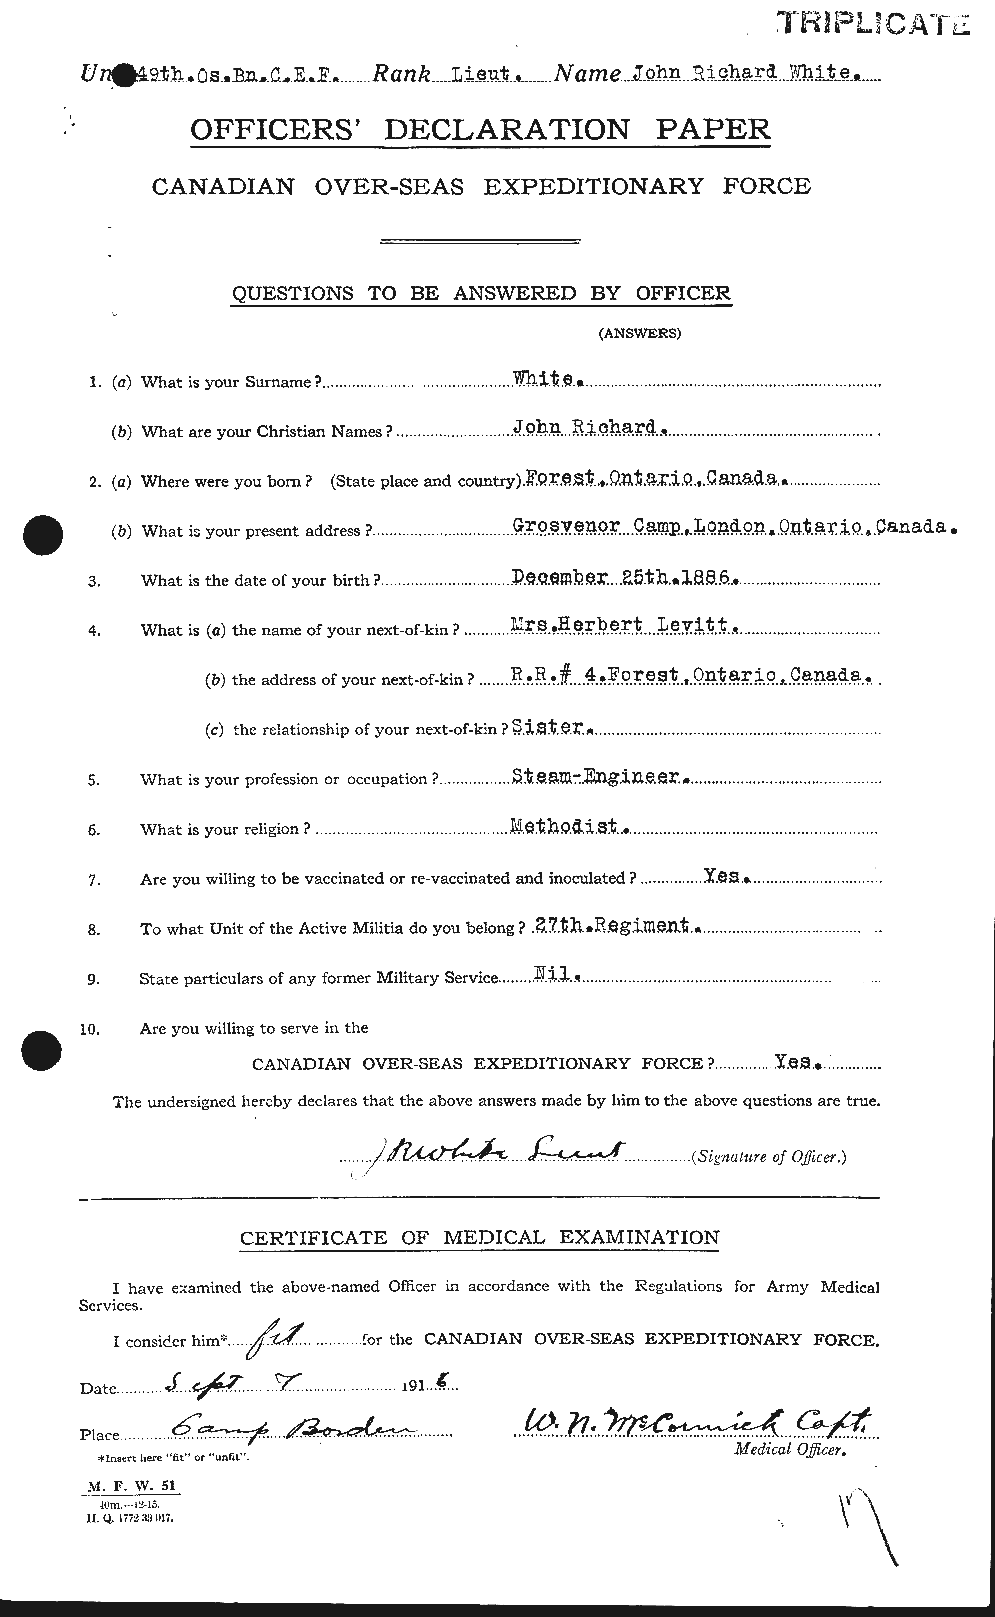 Dossiers du Personnel de la Première Guerre mondiale - CEC 671591a